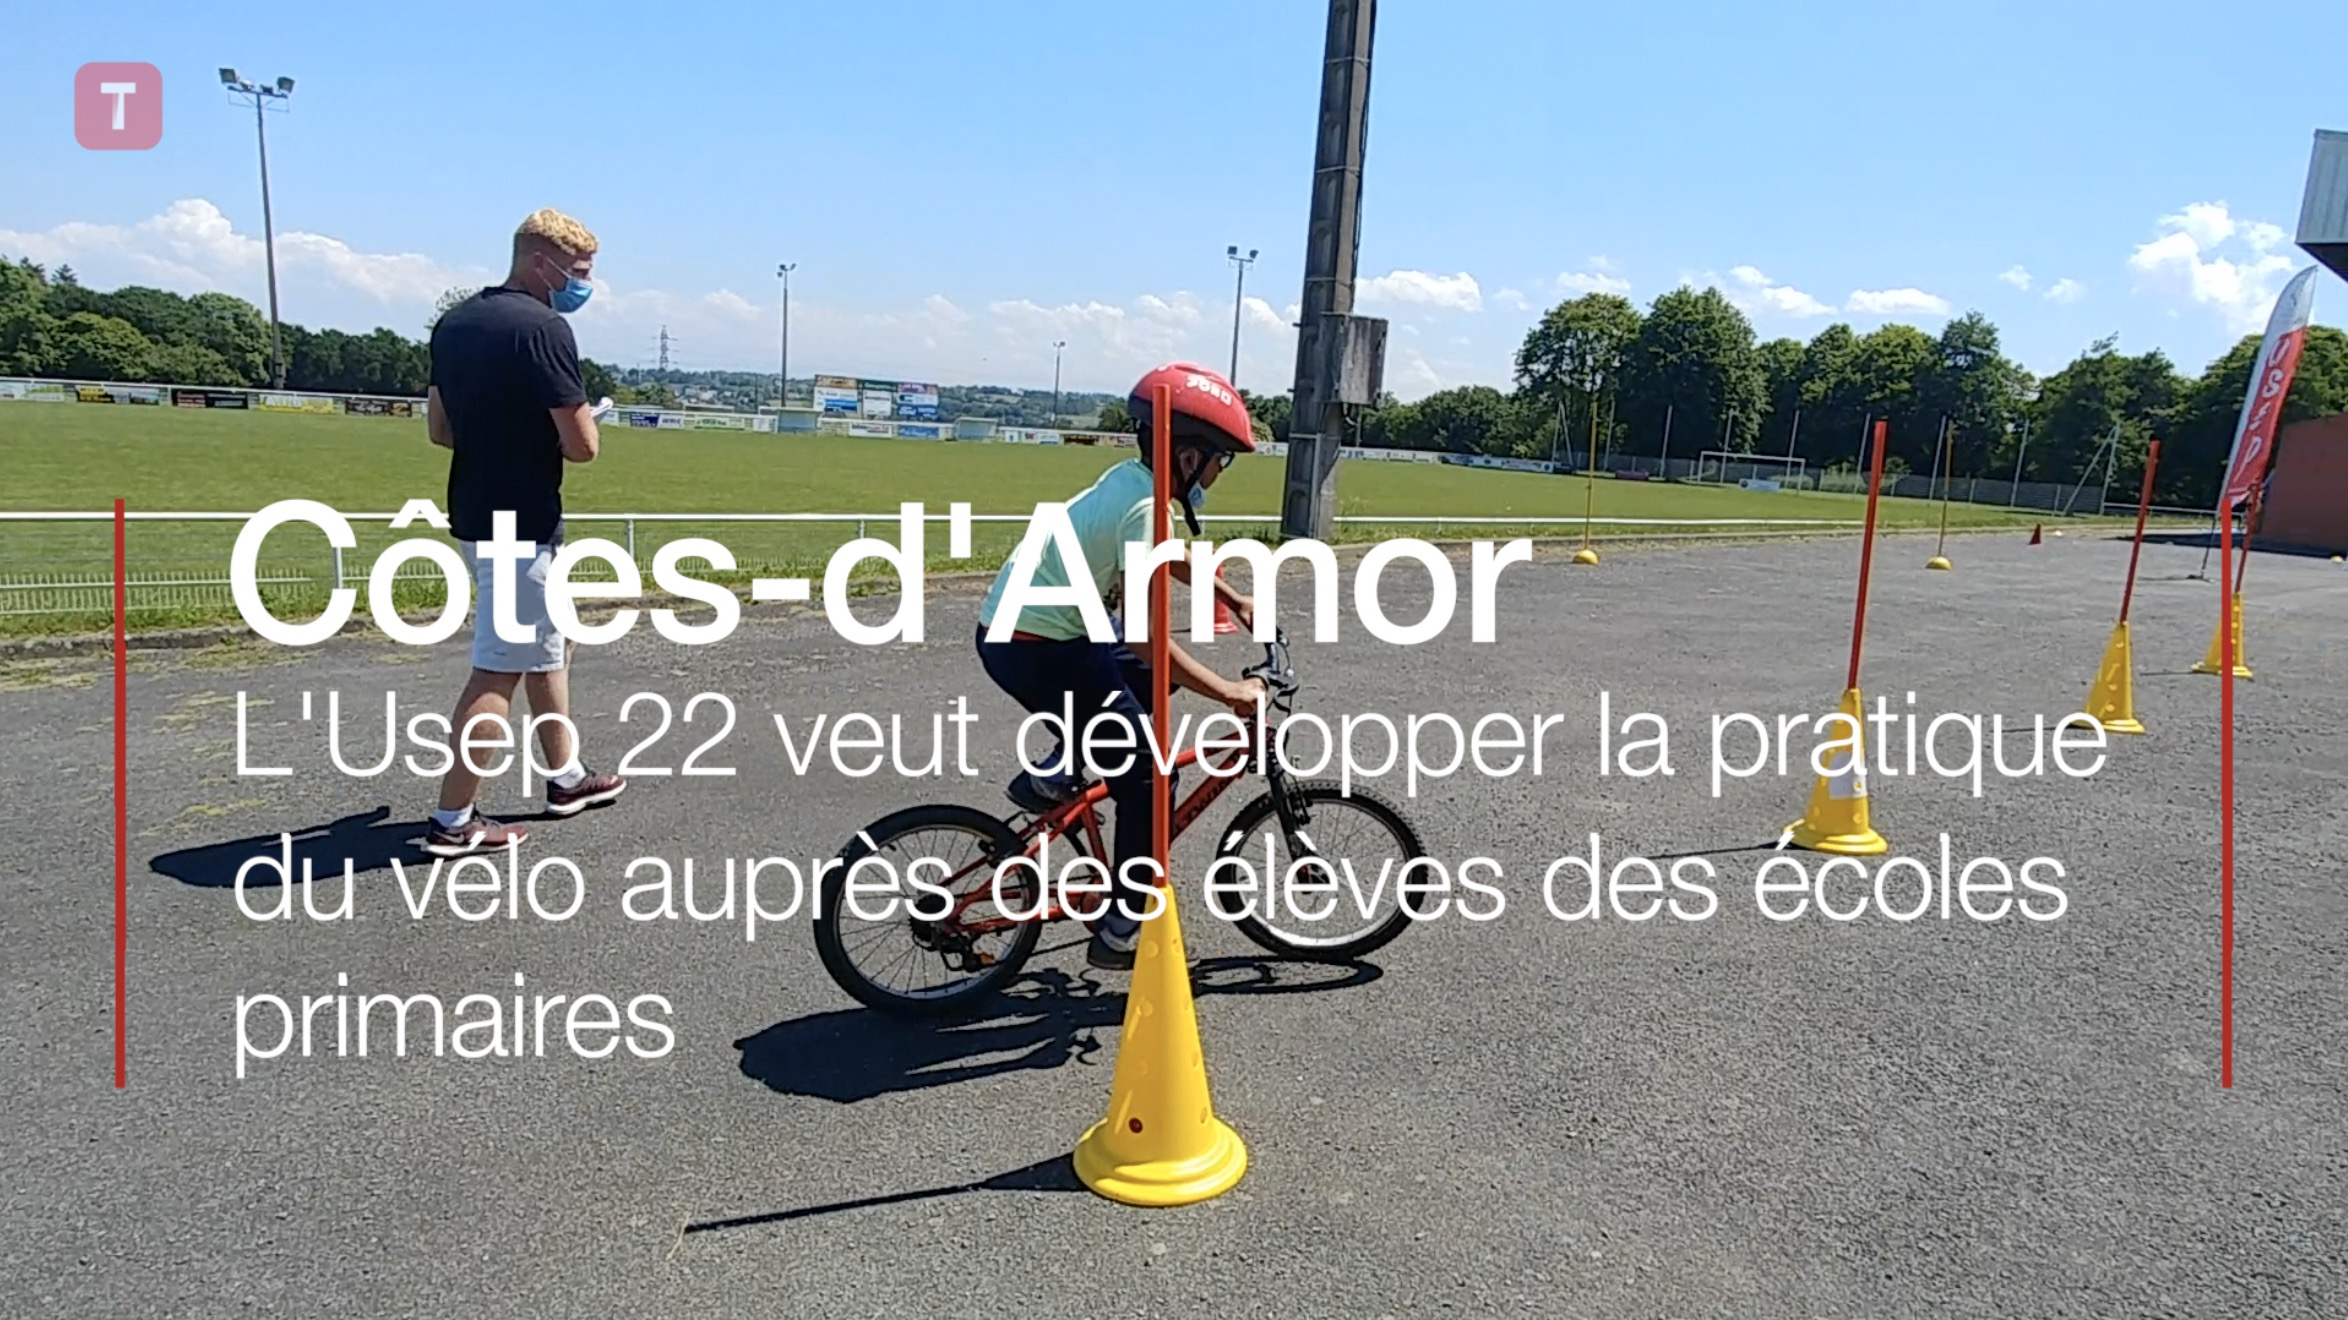 Côtes-d'Armor. L'Usep 22 veut développer la pratique du vélo auprès des élèves des écoles primaires (Le Télégramme)